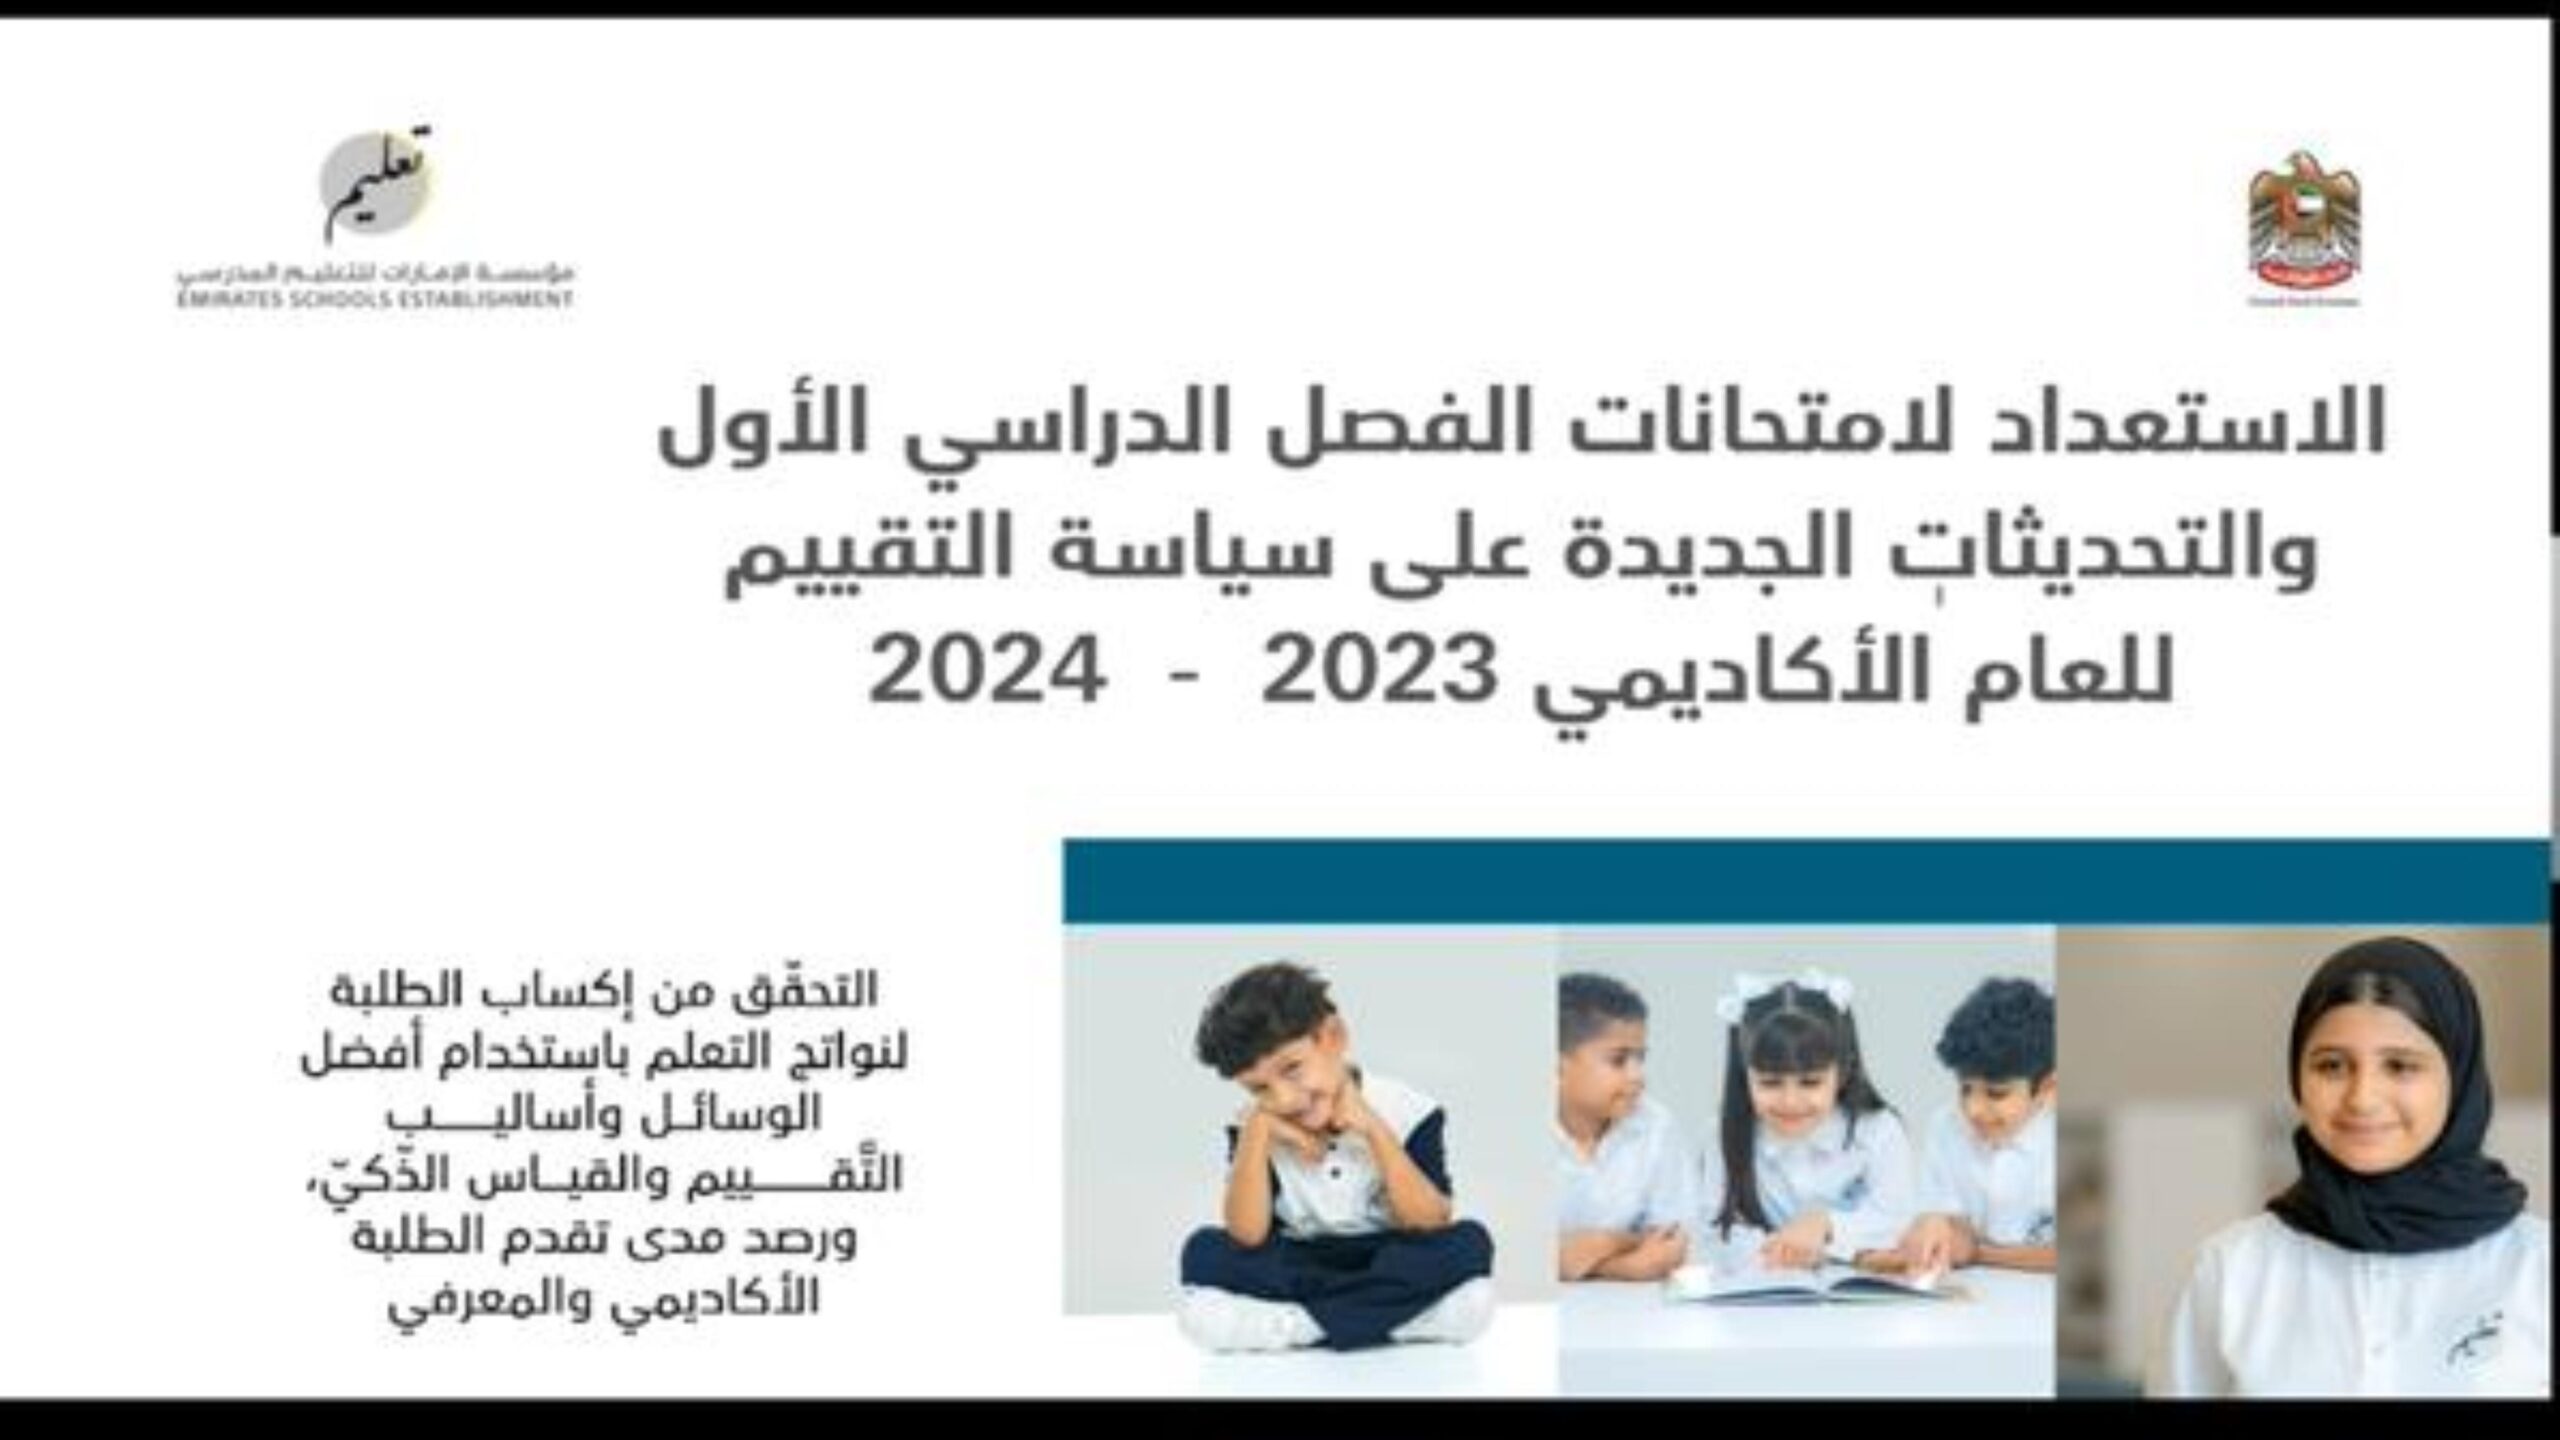 الاستعداد لامتحانات والتحديثات الجديدة على سياسة التقييم الفصل الدراسي الأول 2023-2024 